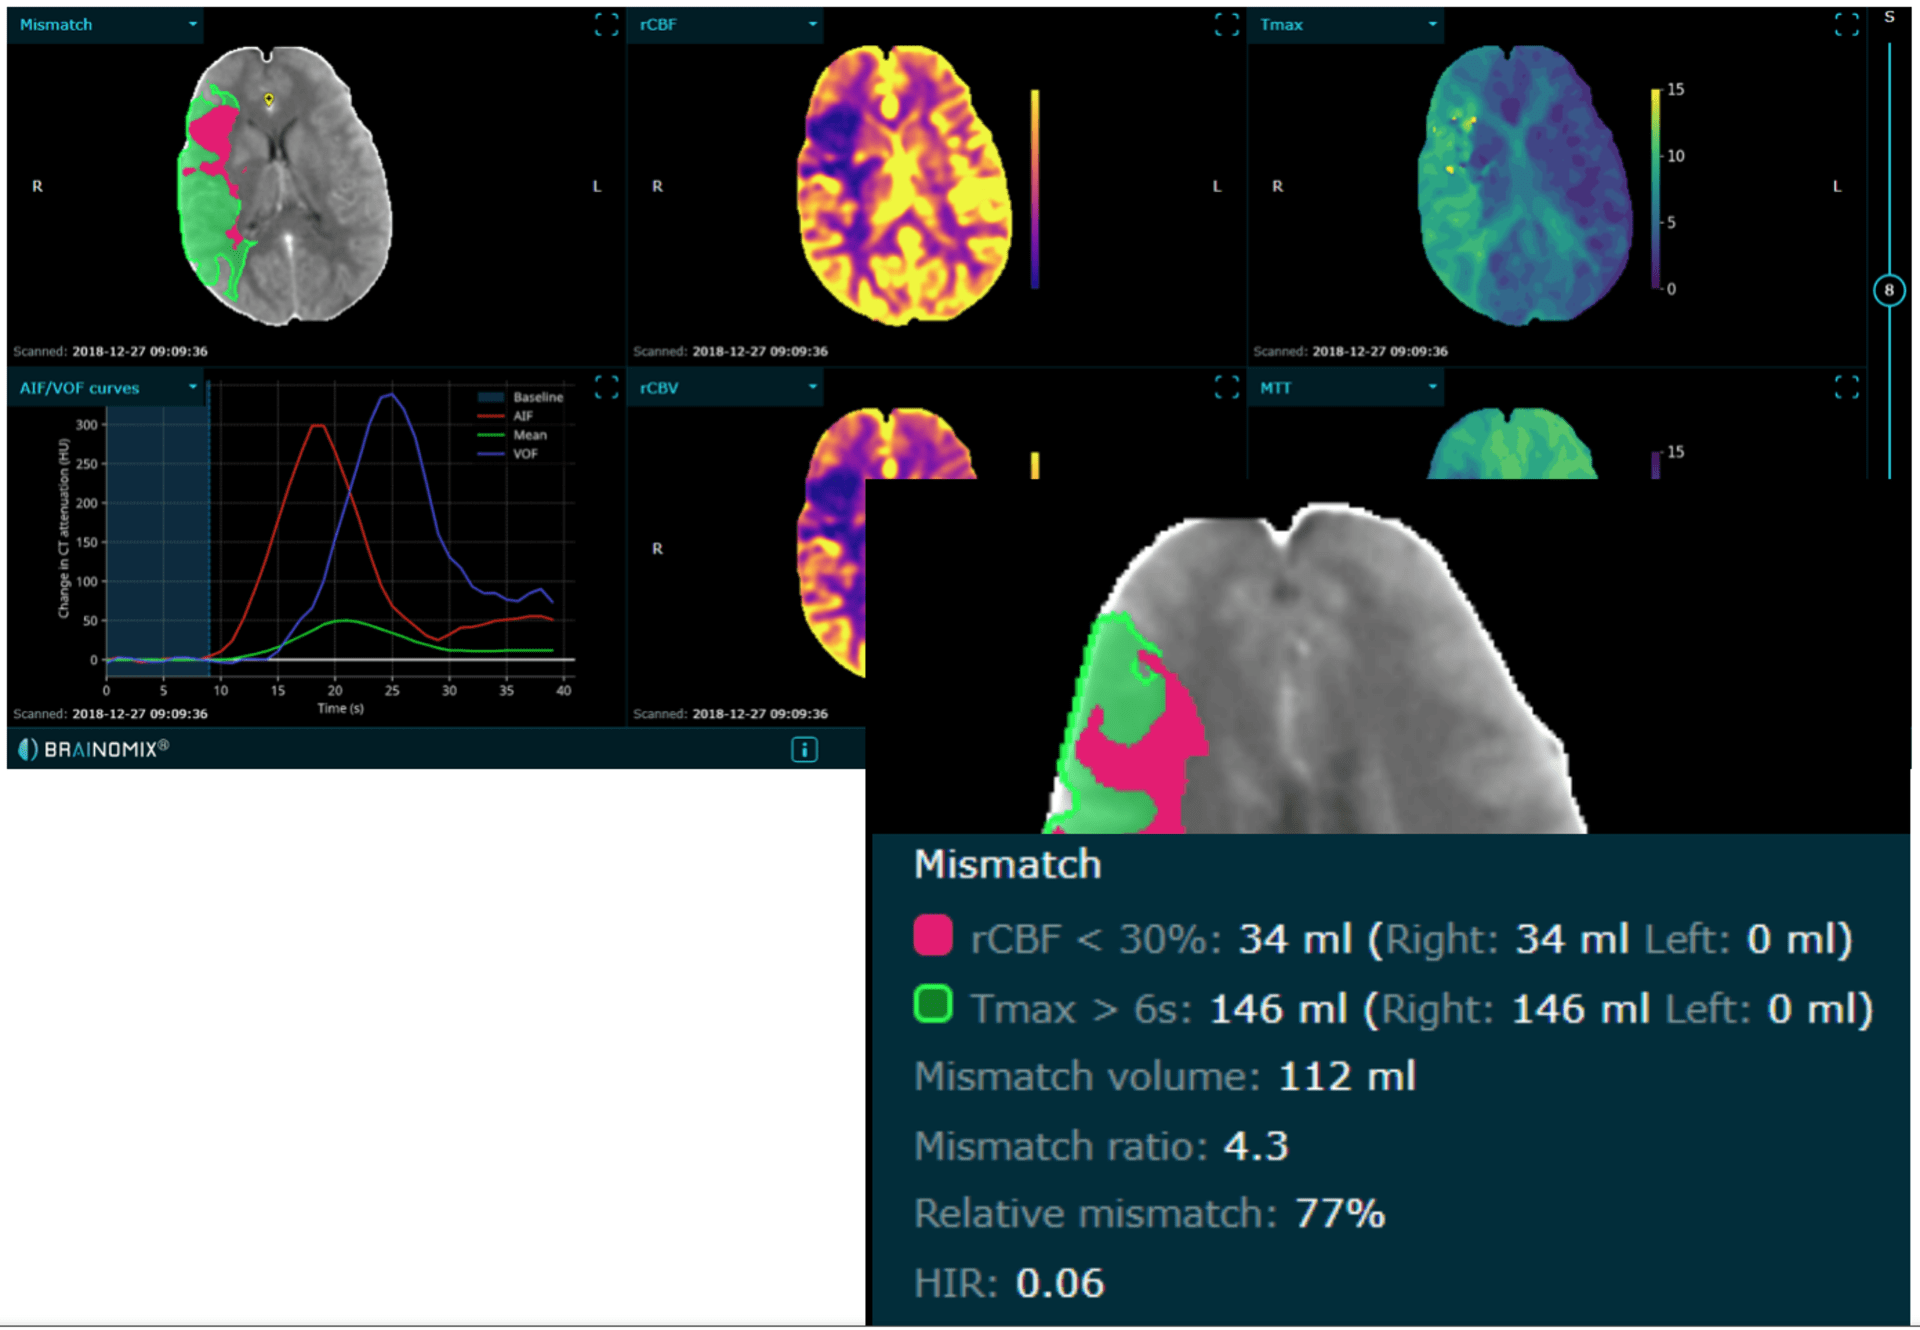 Ilustrační snímek CT perfúzního vyšetření (červeně zobrazeno tzv. jádro ischémie a zeleně tkáň, kterou můžeme efektivní léčbou zachránit, tzv. penumbra) – vše hodnoceno automaticky softwarem Brainomix.